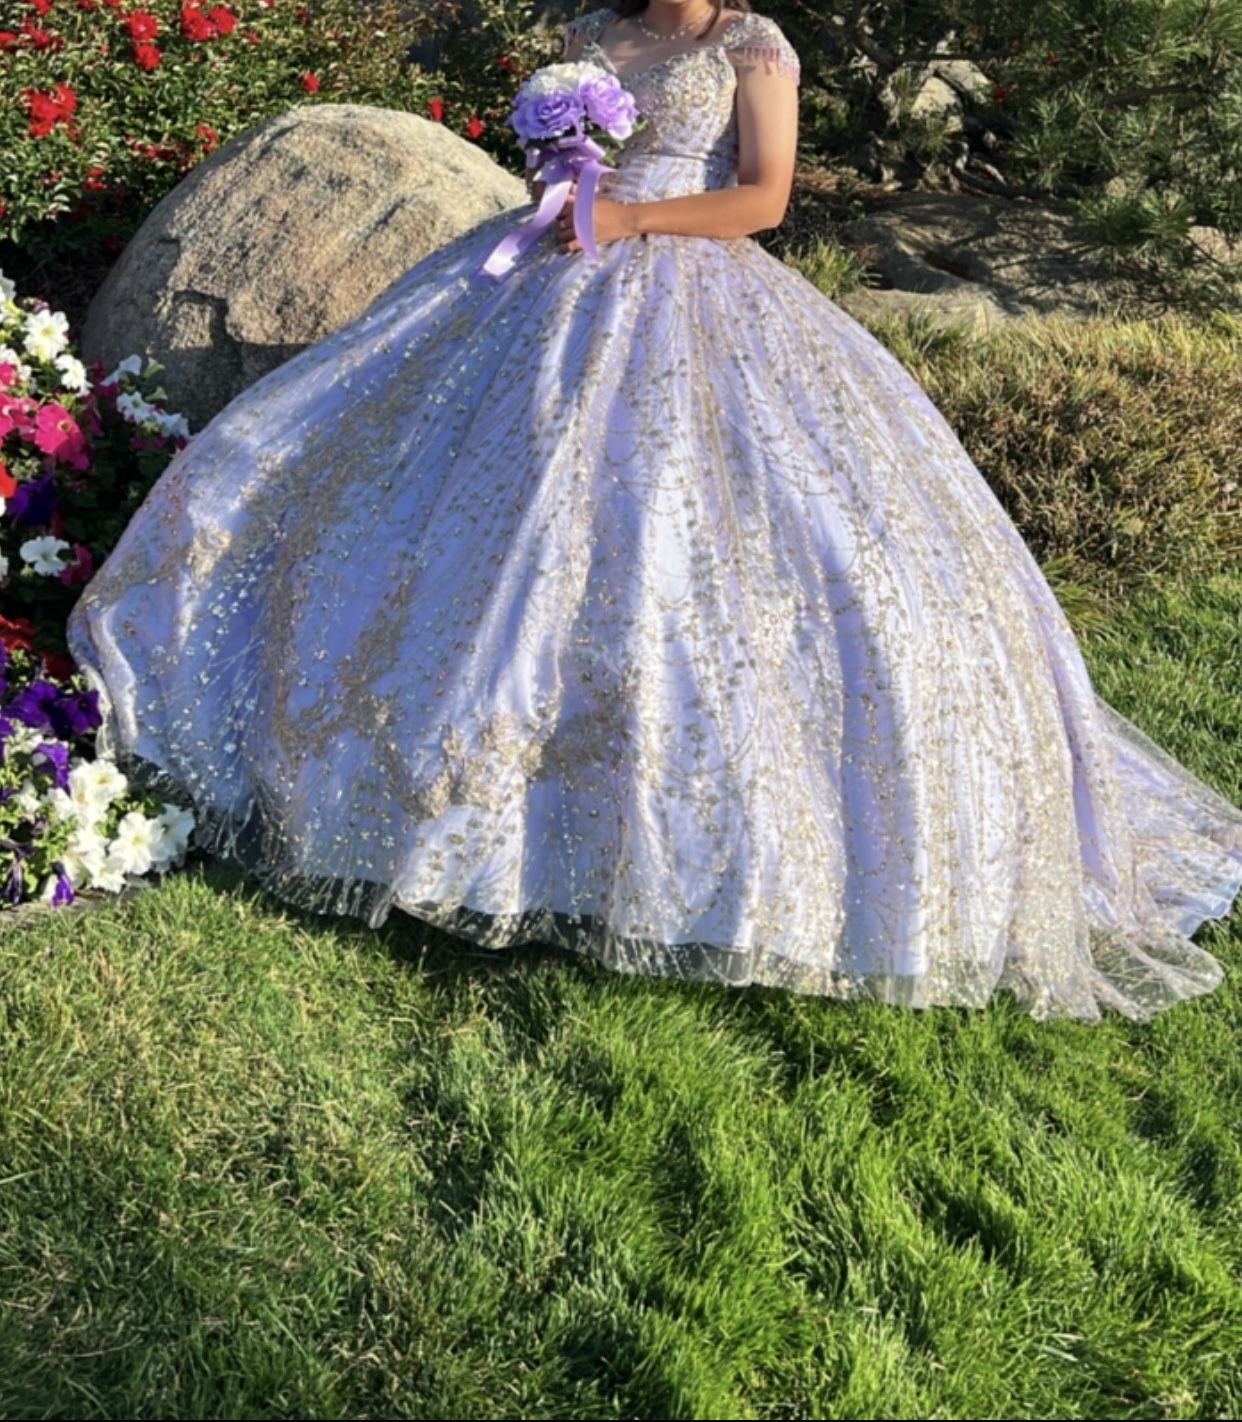 Purple Quinceañera Dress